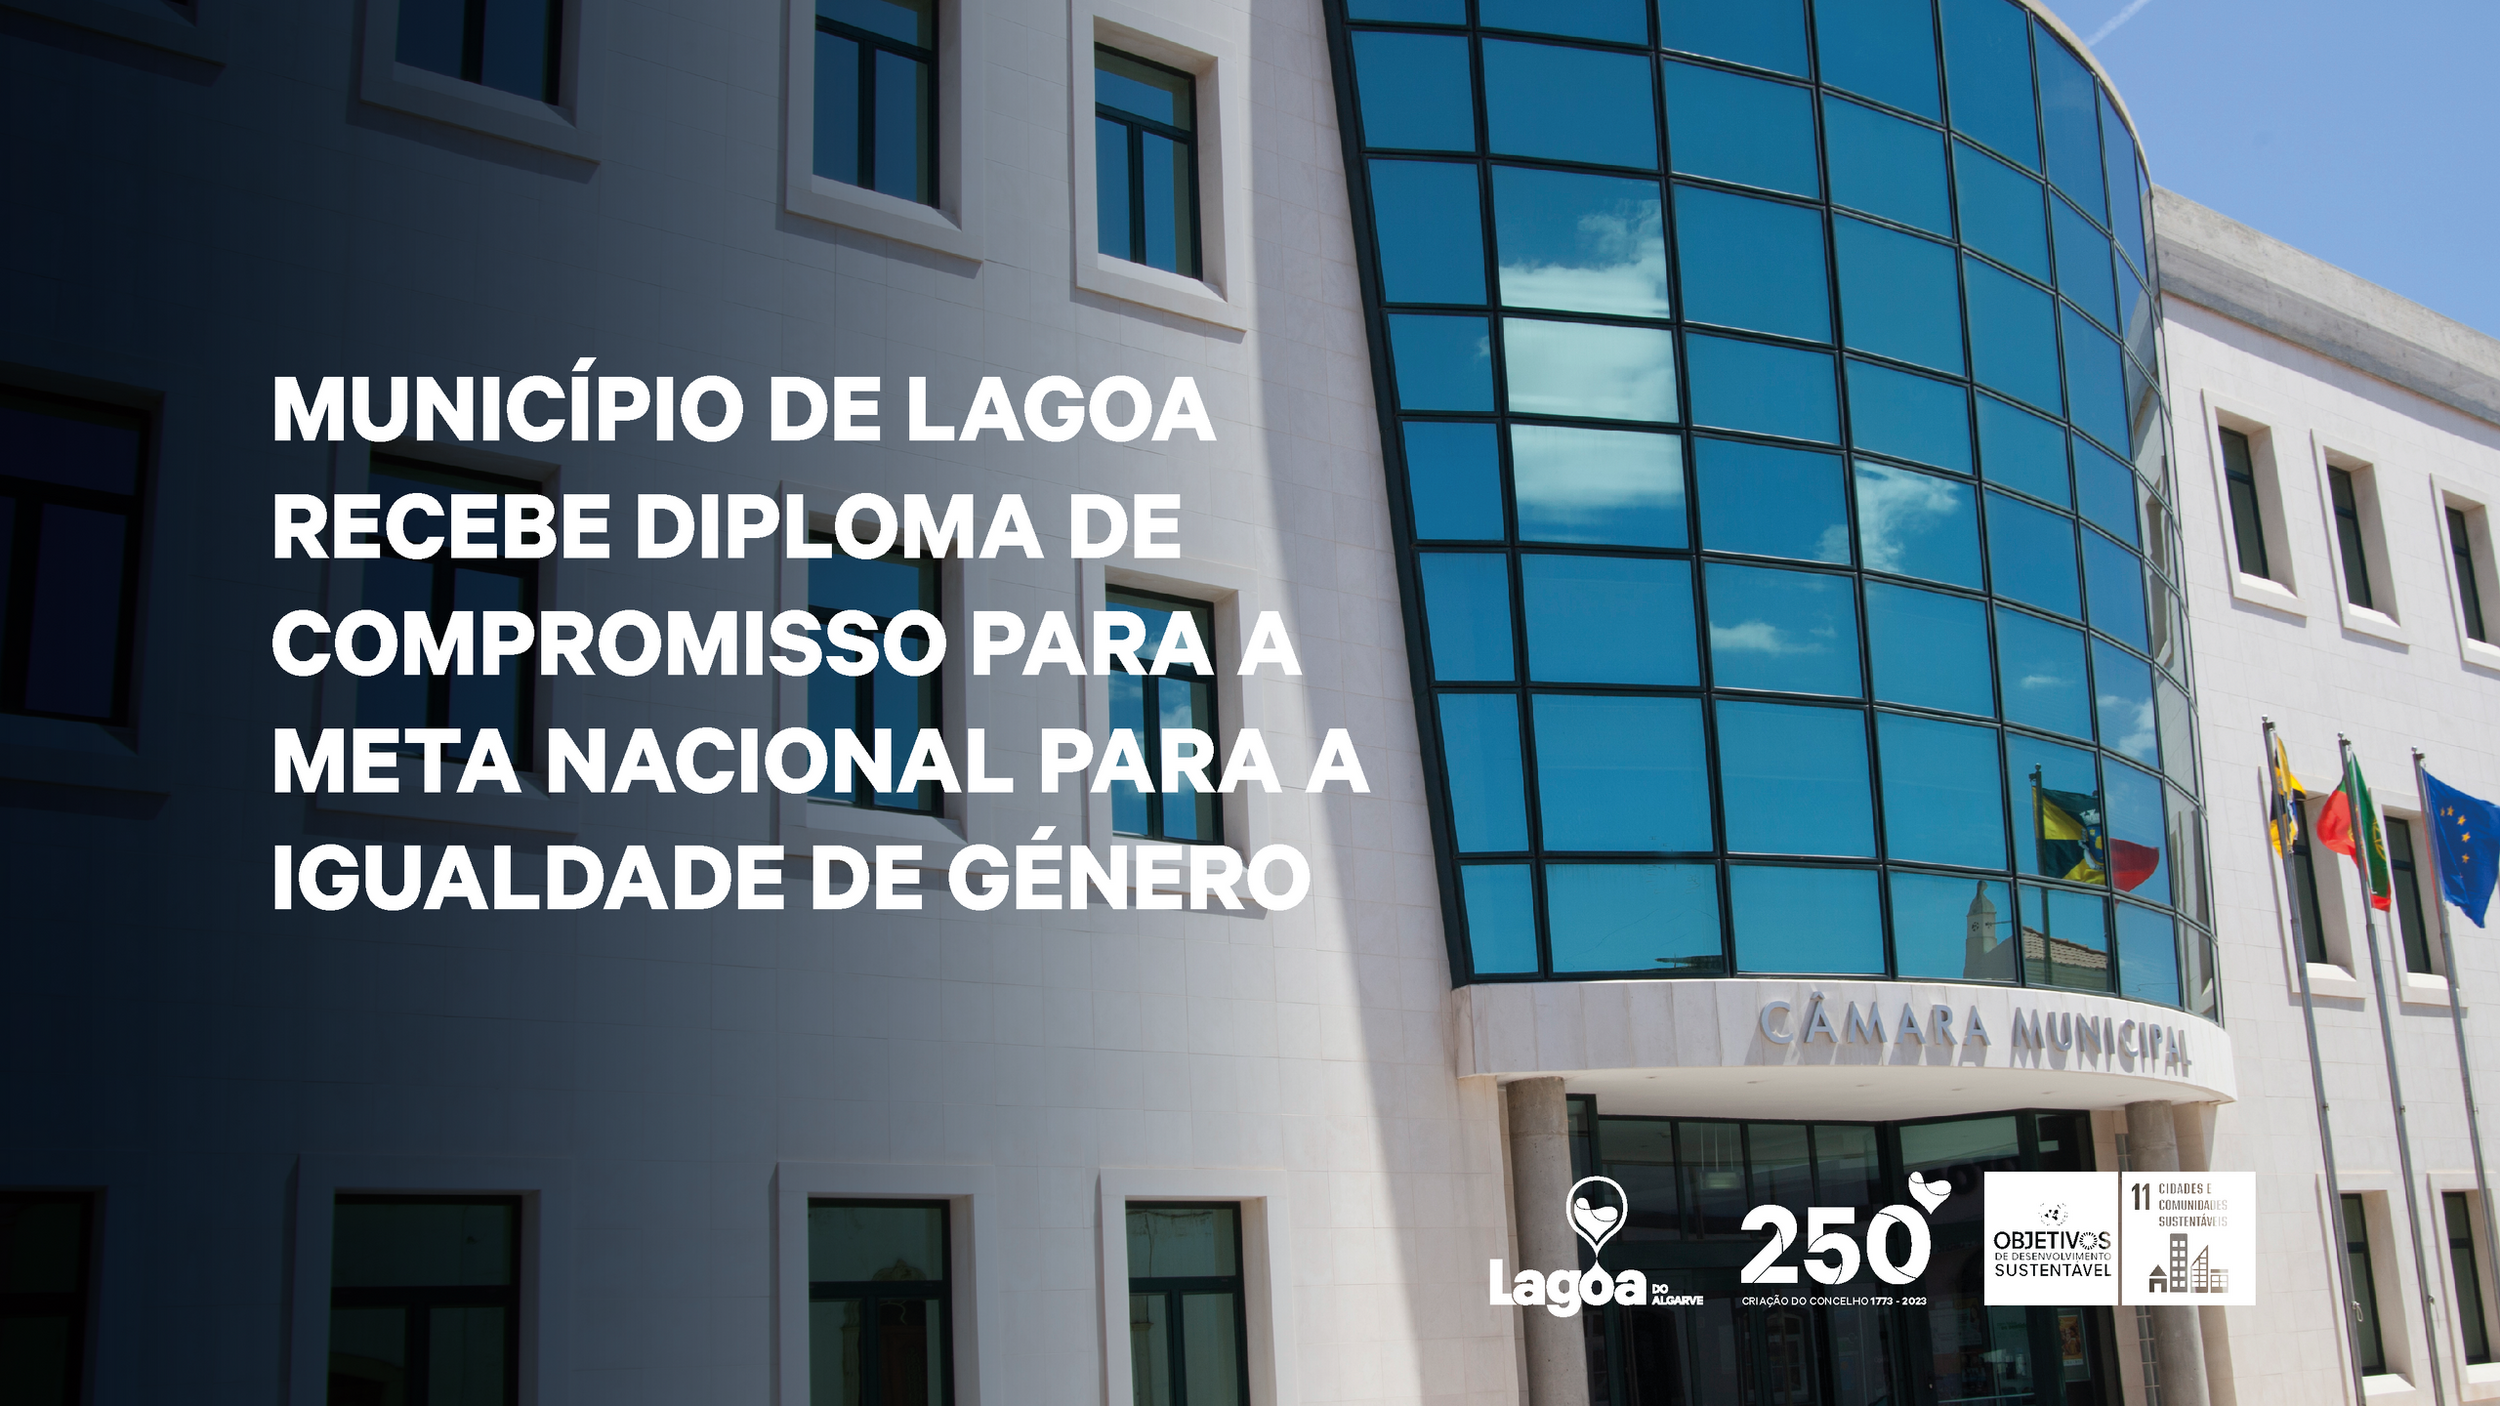 Município de Lagoa recebe Diploma de Compromisso para a Meta Nacional para a Igualdade de Género